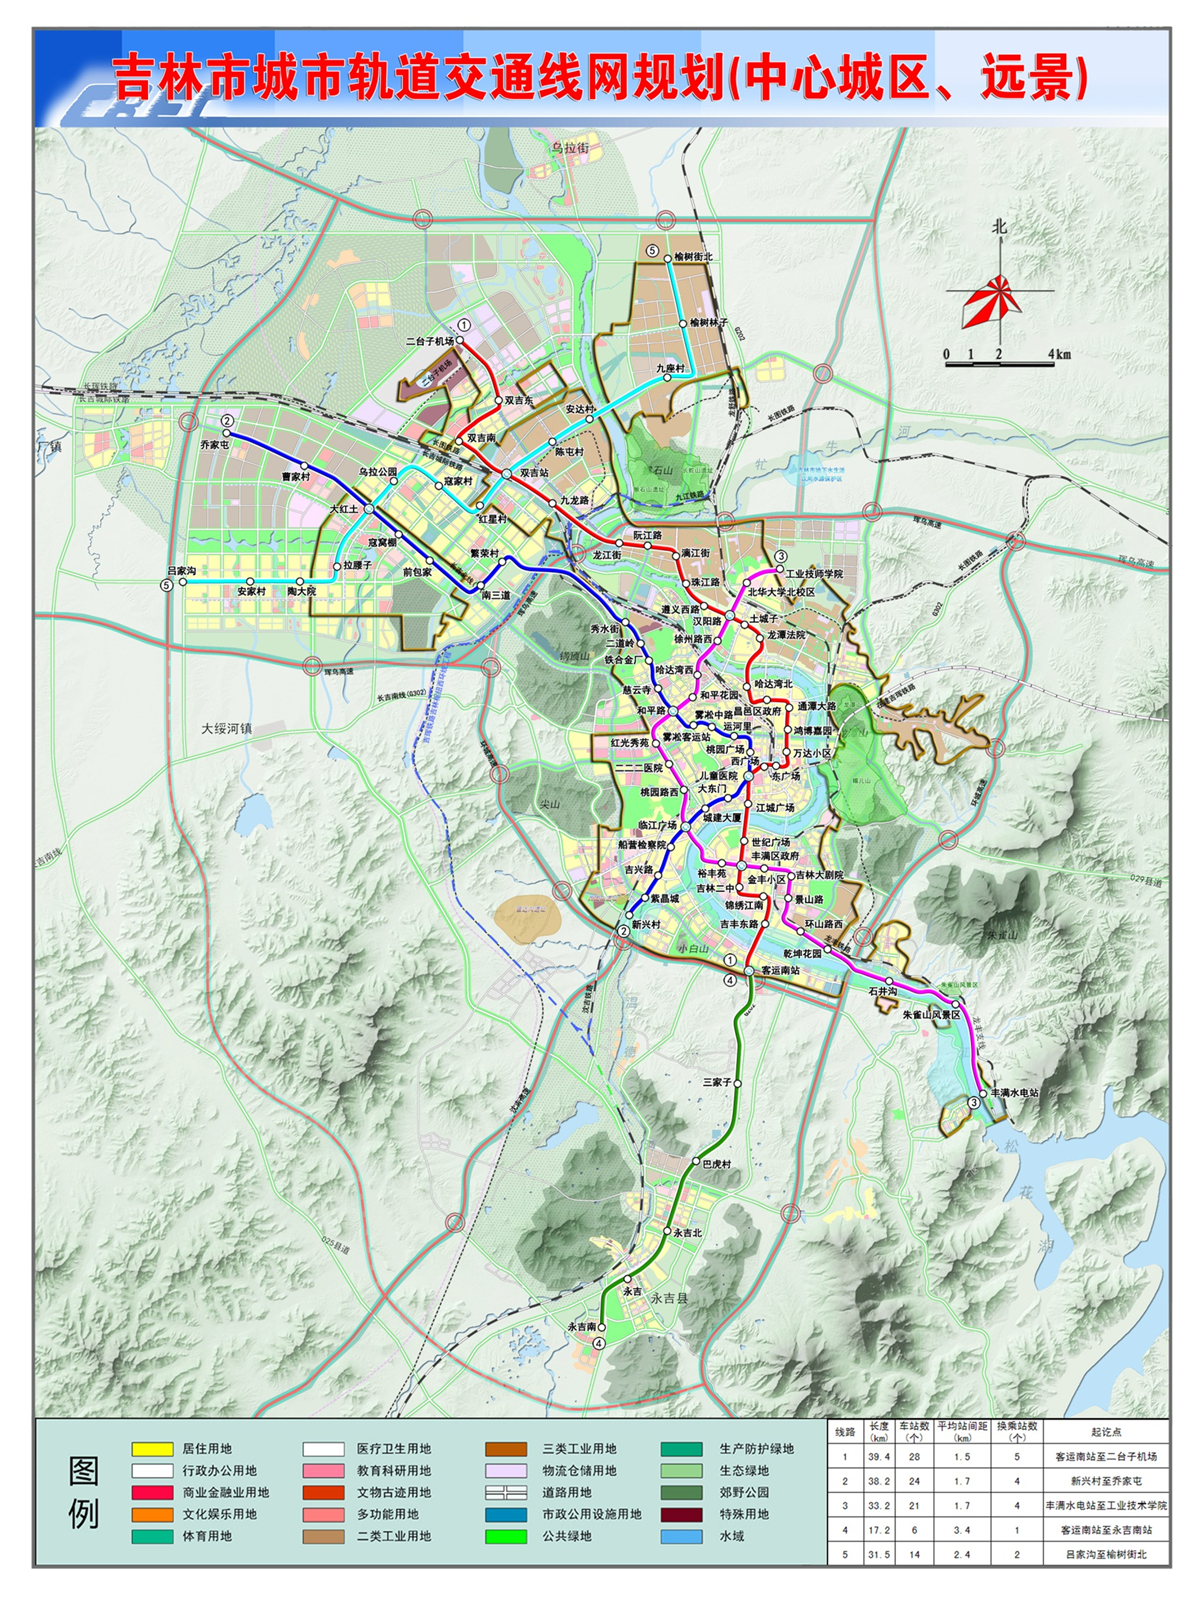 吉林市城市軌道交通線網規劃